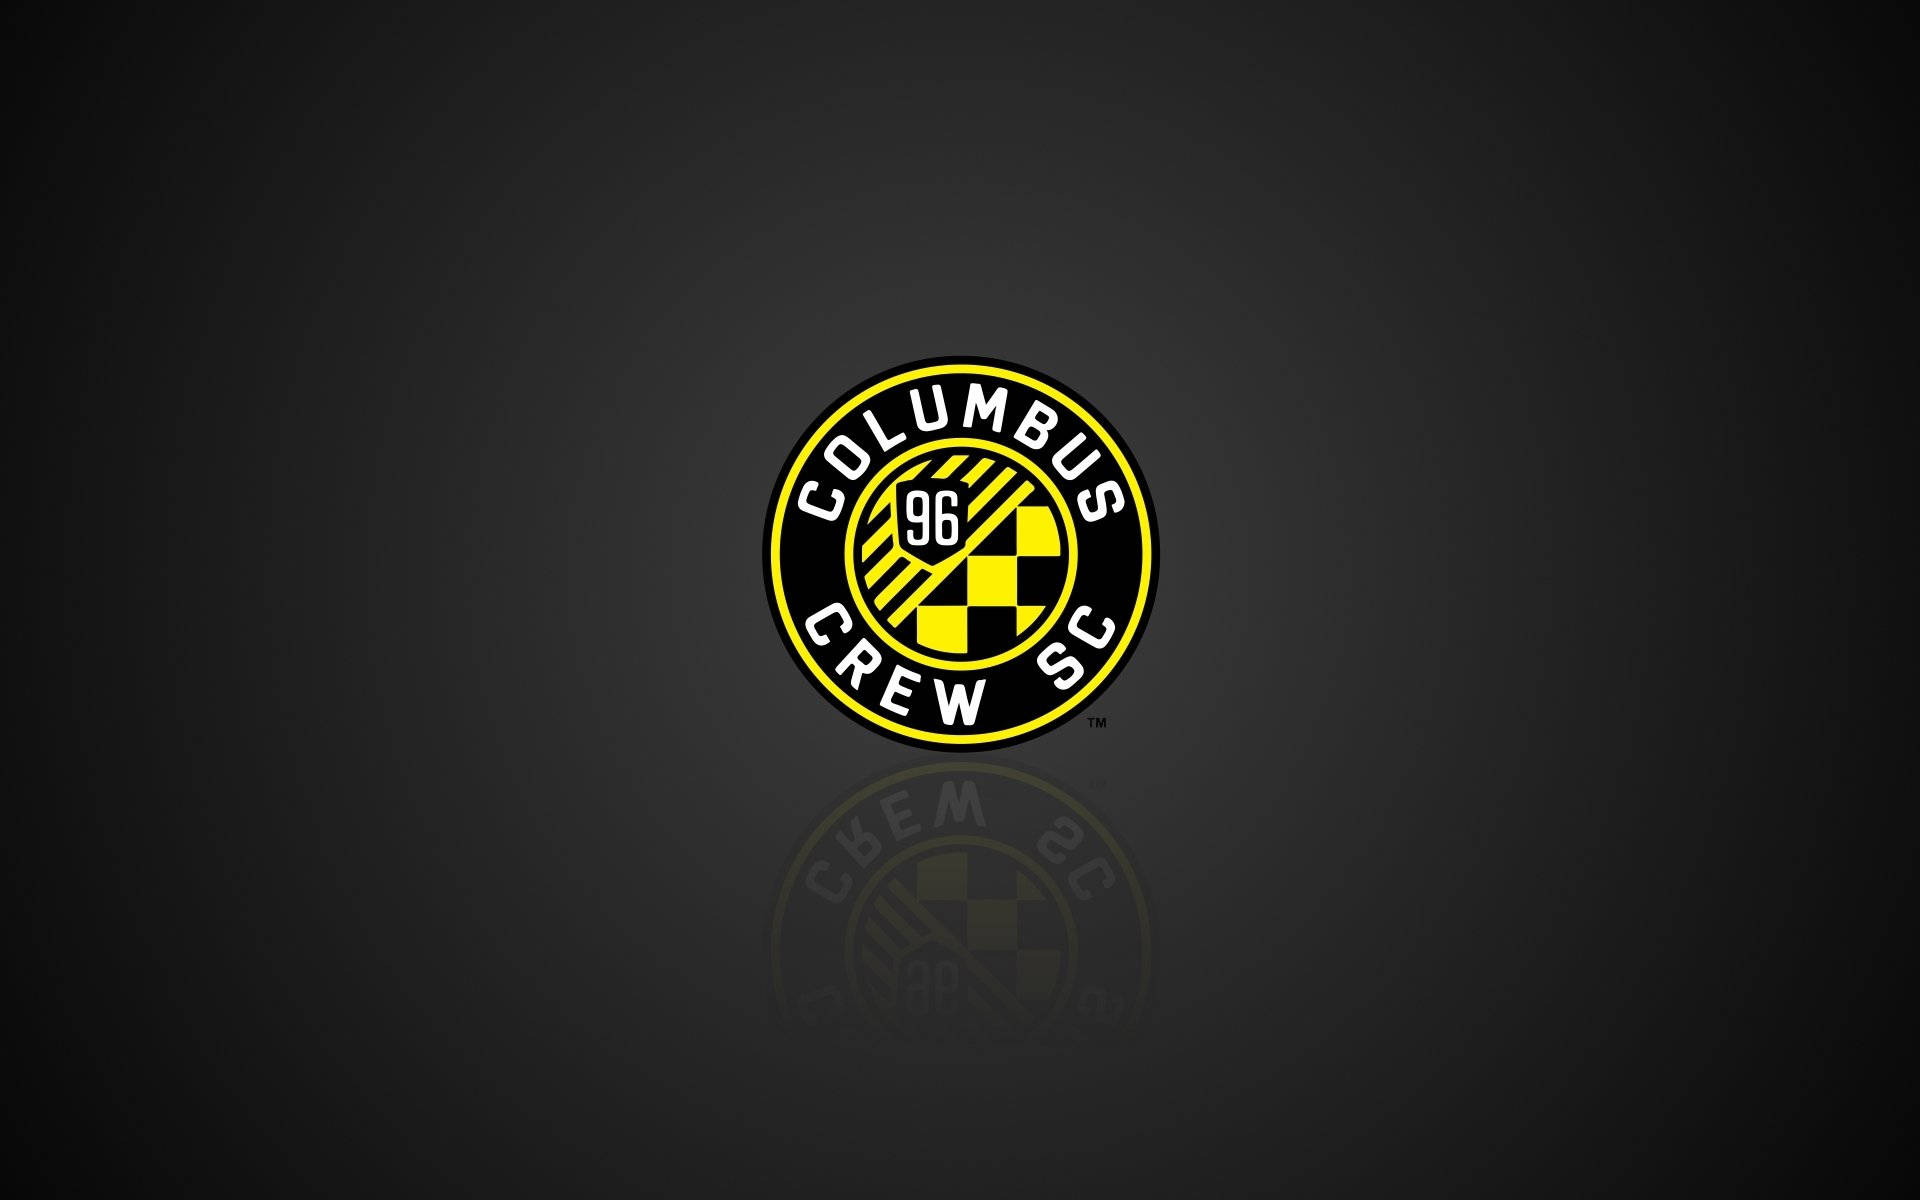 Oaplicativo Do Columbus Crew Soccer Club Aparece Em Um Fundo Preto. Papel de Parede